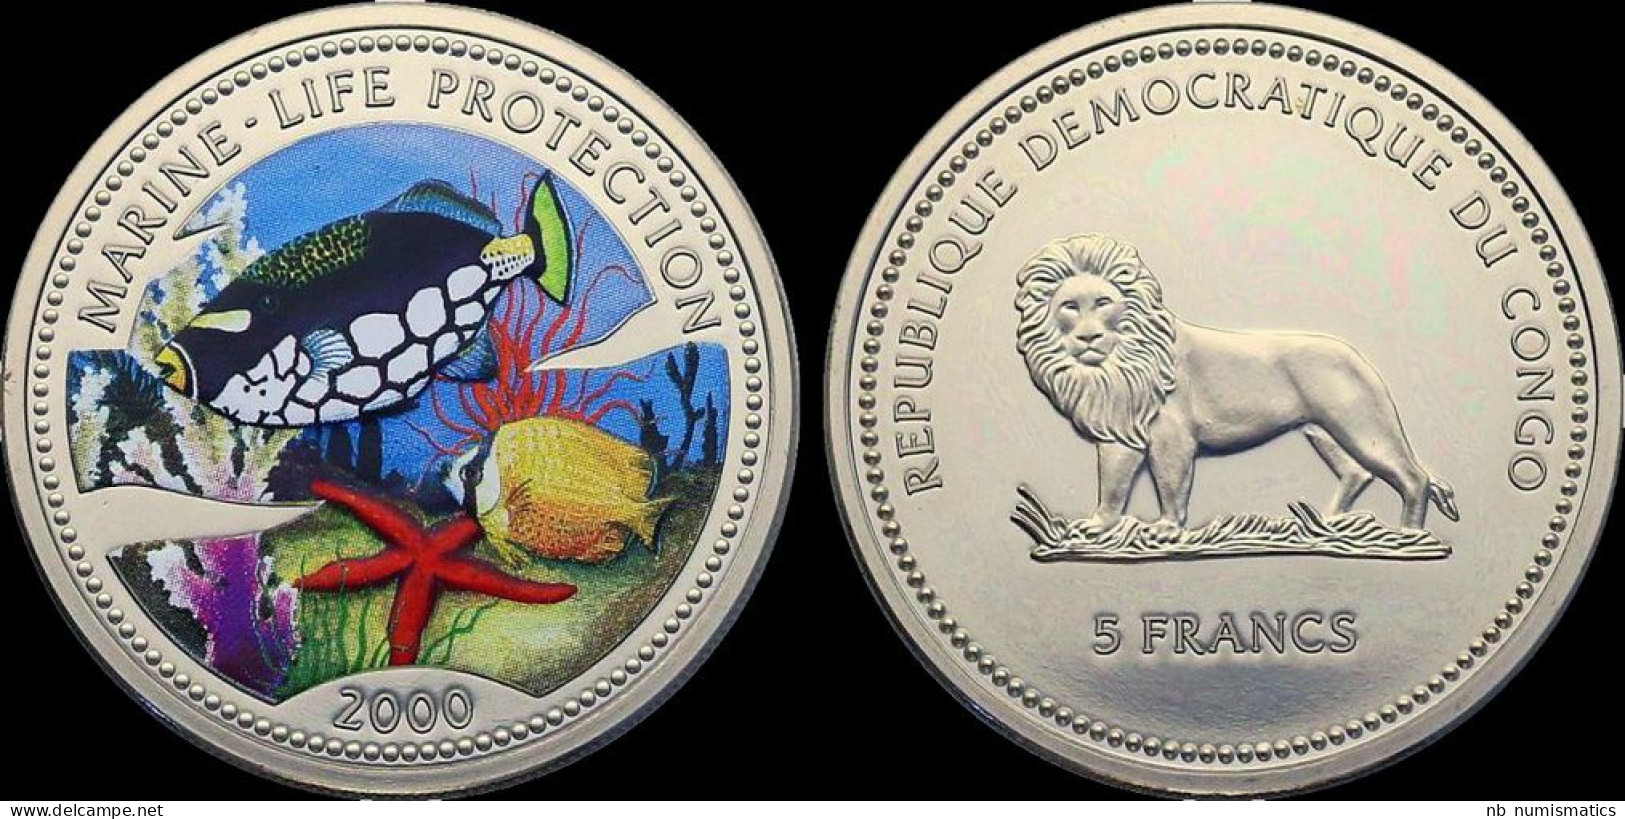 Republique Democratique Du Congo 5 Francs 2000 Marine-life Protection Proof In Plastic Capsule - Congo (Democratic Republic 1998)